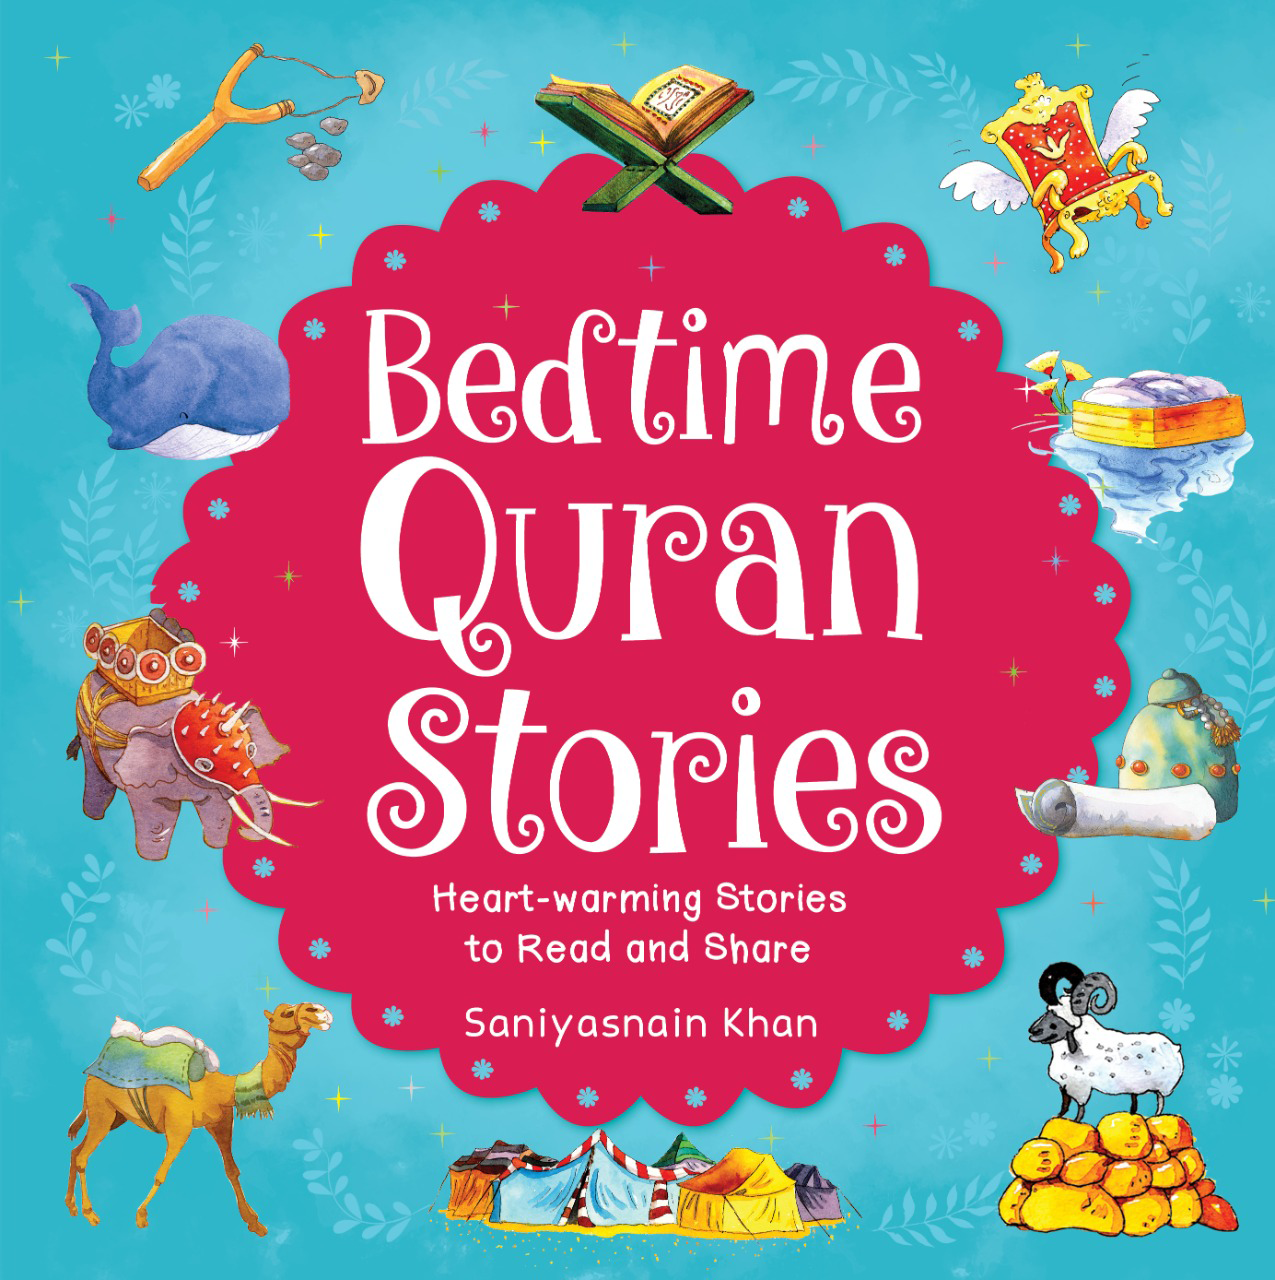 Bedtime Quran Stories